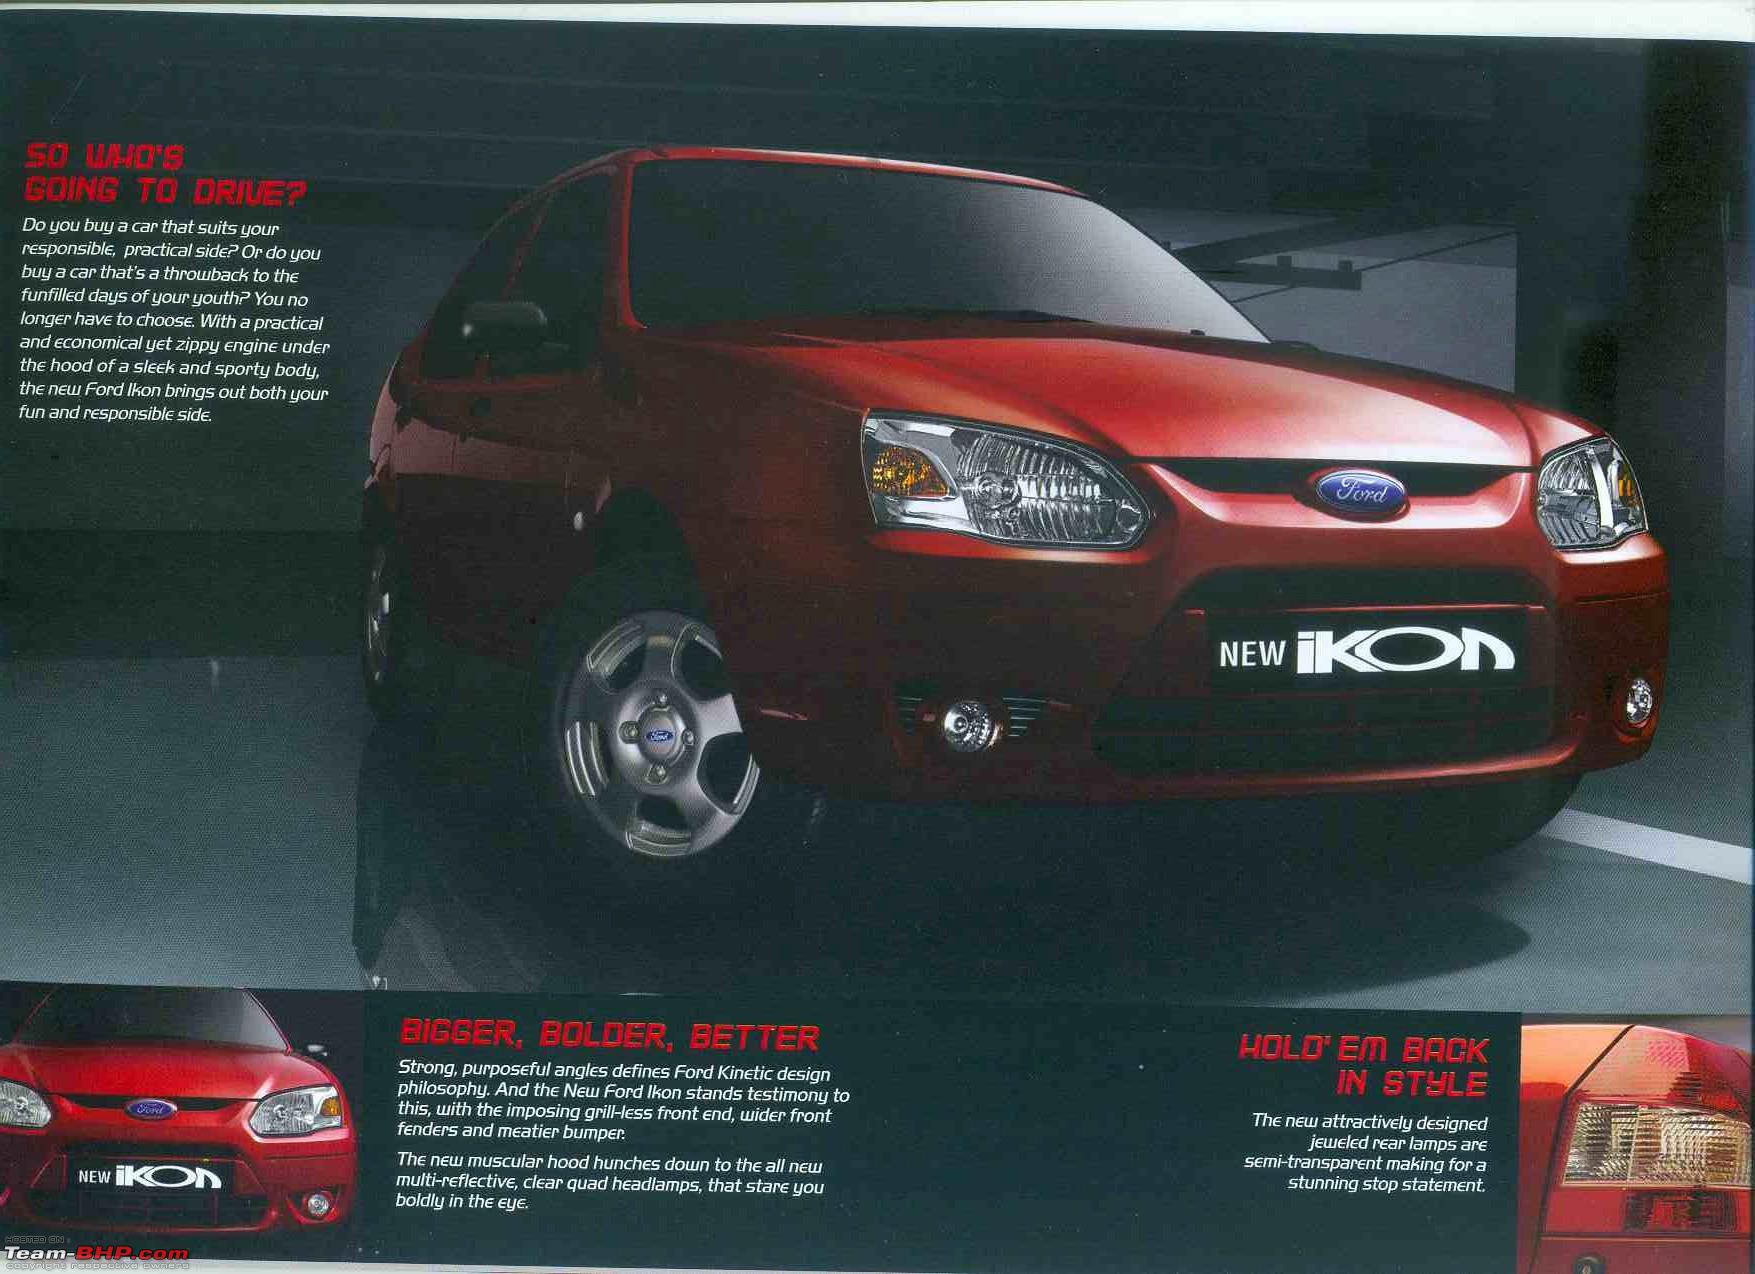 New Ford Ikon TDCi brochure! - Team-BHP